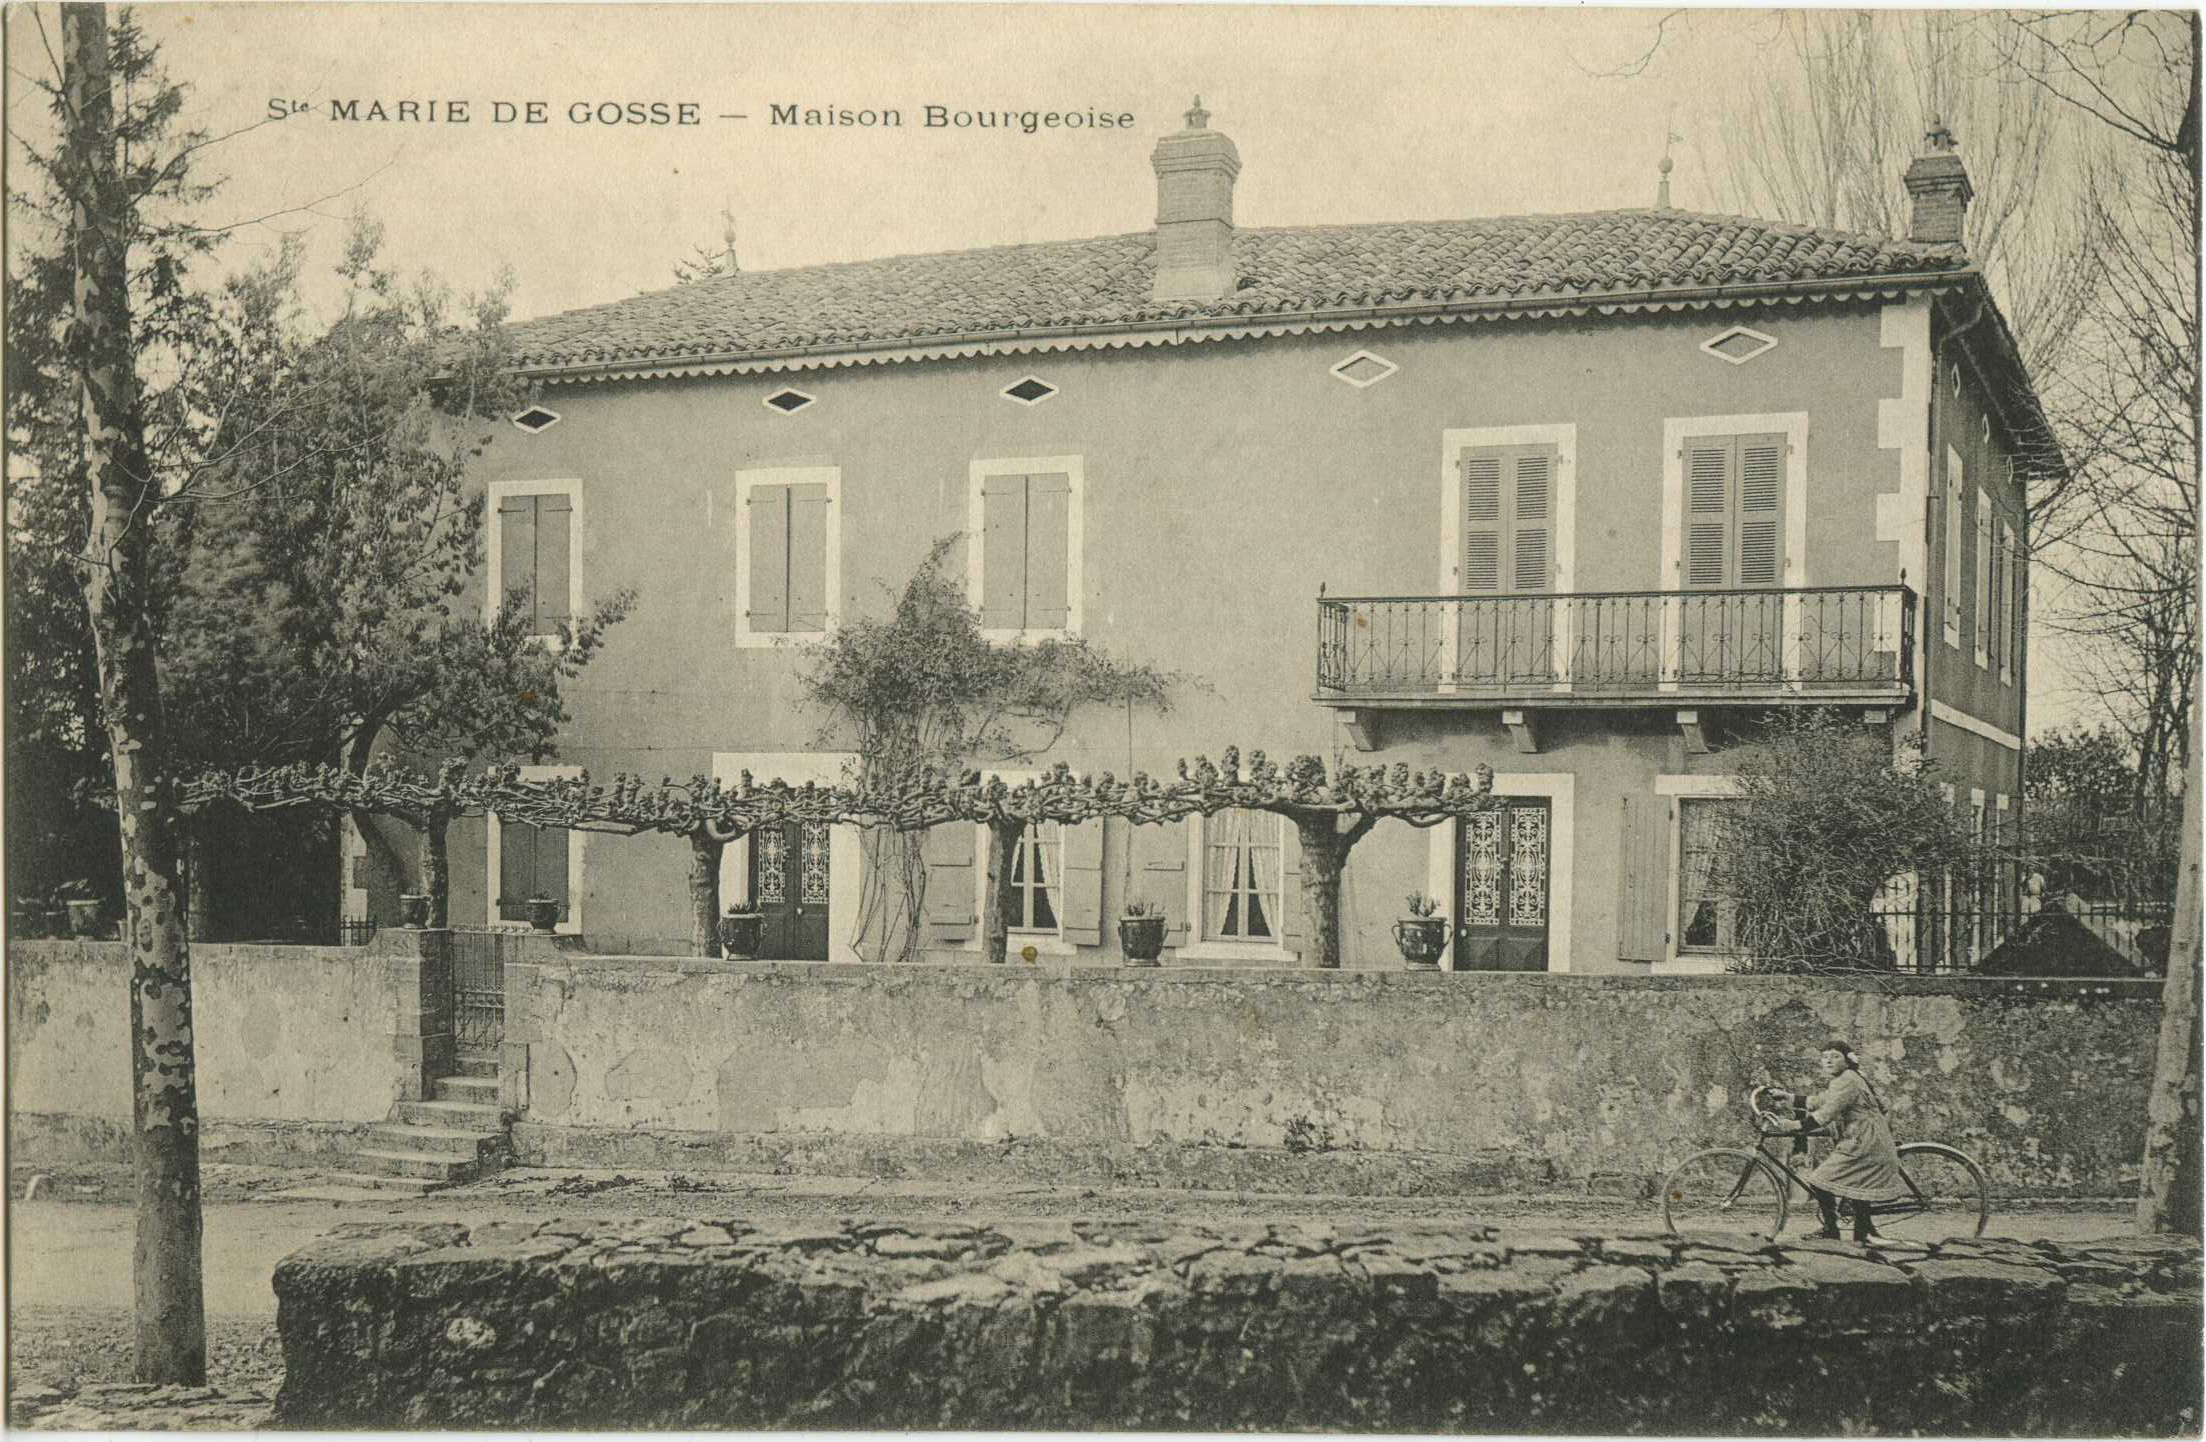 Sainte-Marie-de-Gosse - Maison Bourgeoise